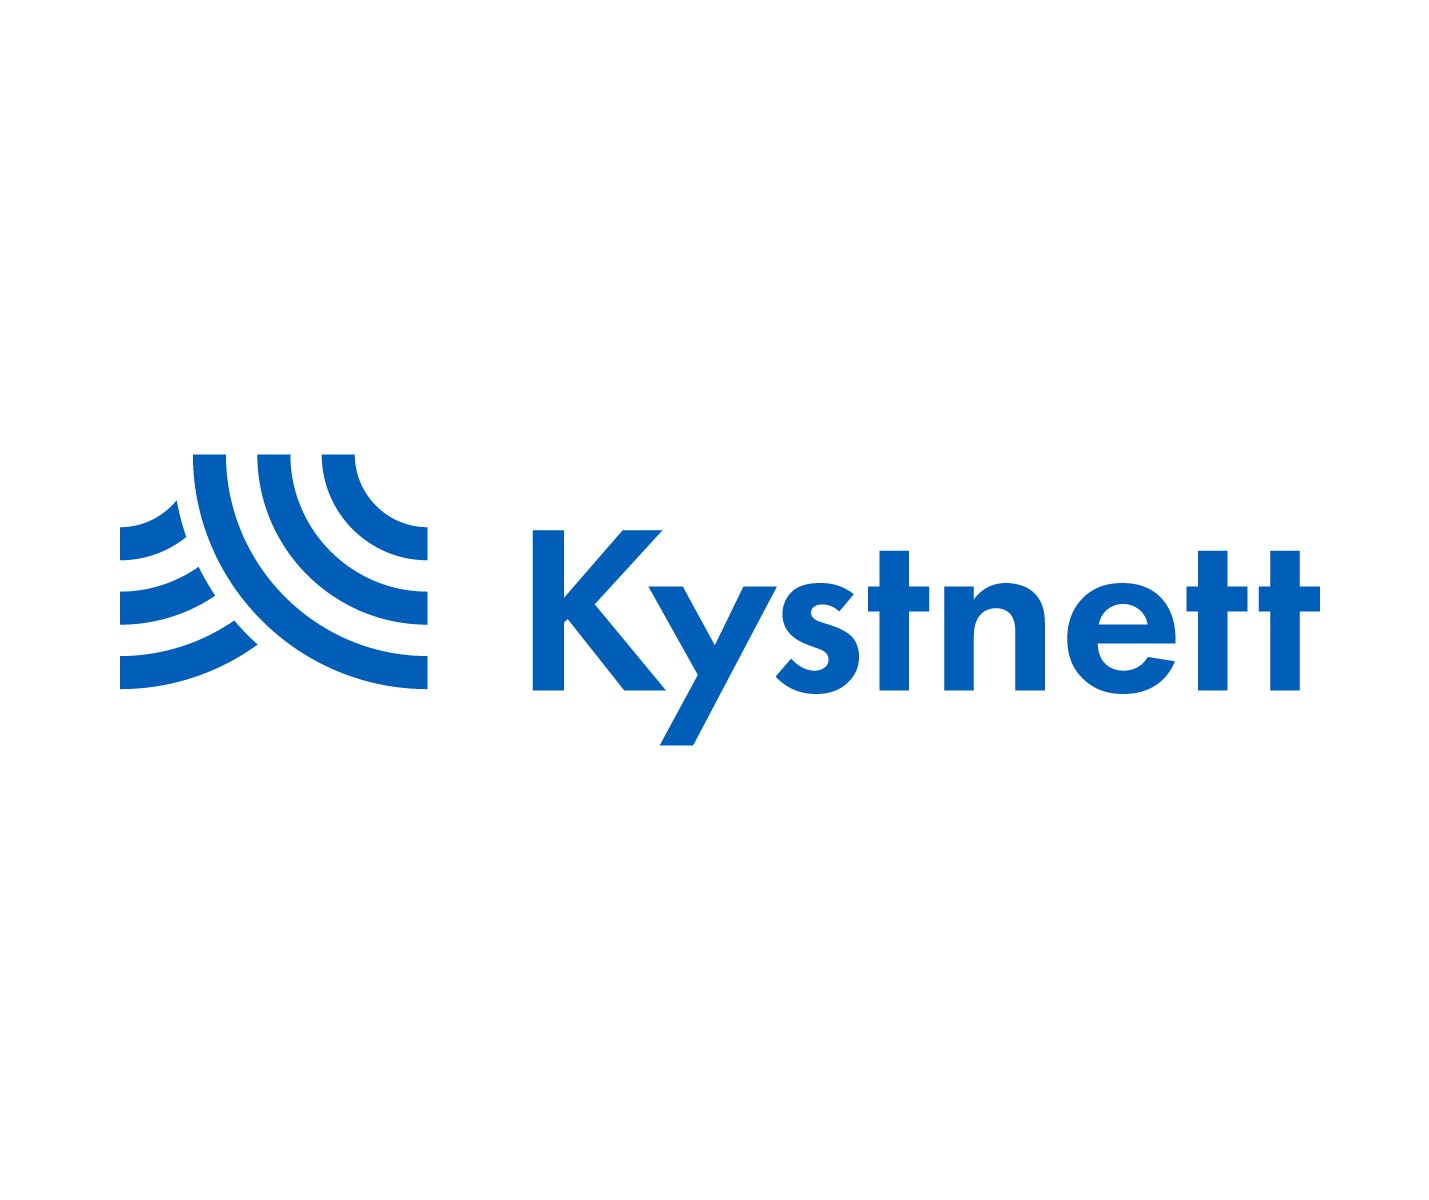 280014291200187-kystnett-logo-medium-standard.jpg